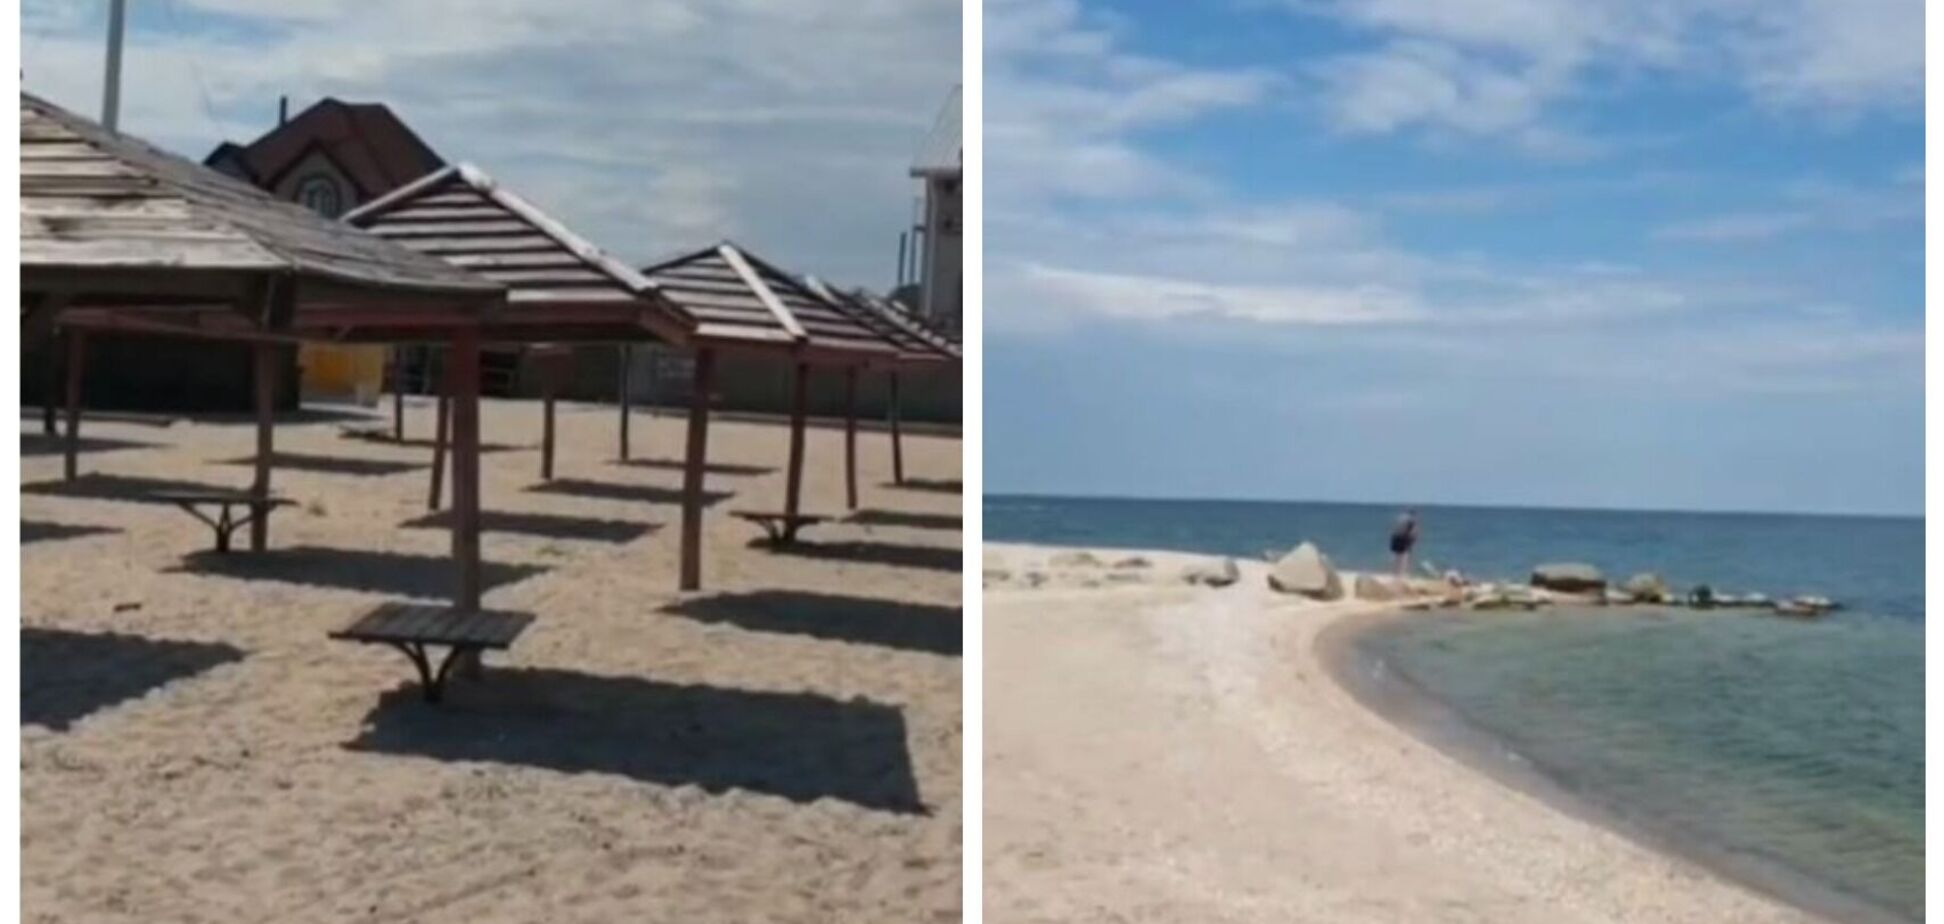 Море теплое, но купаться некому: в сети появилось видео пустынного пляжа в оккупированном Бердянске